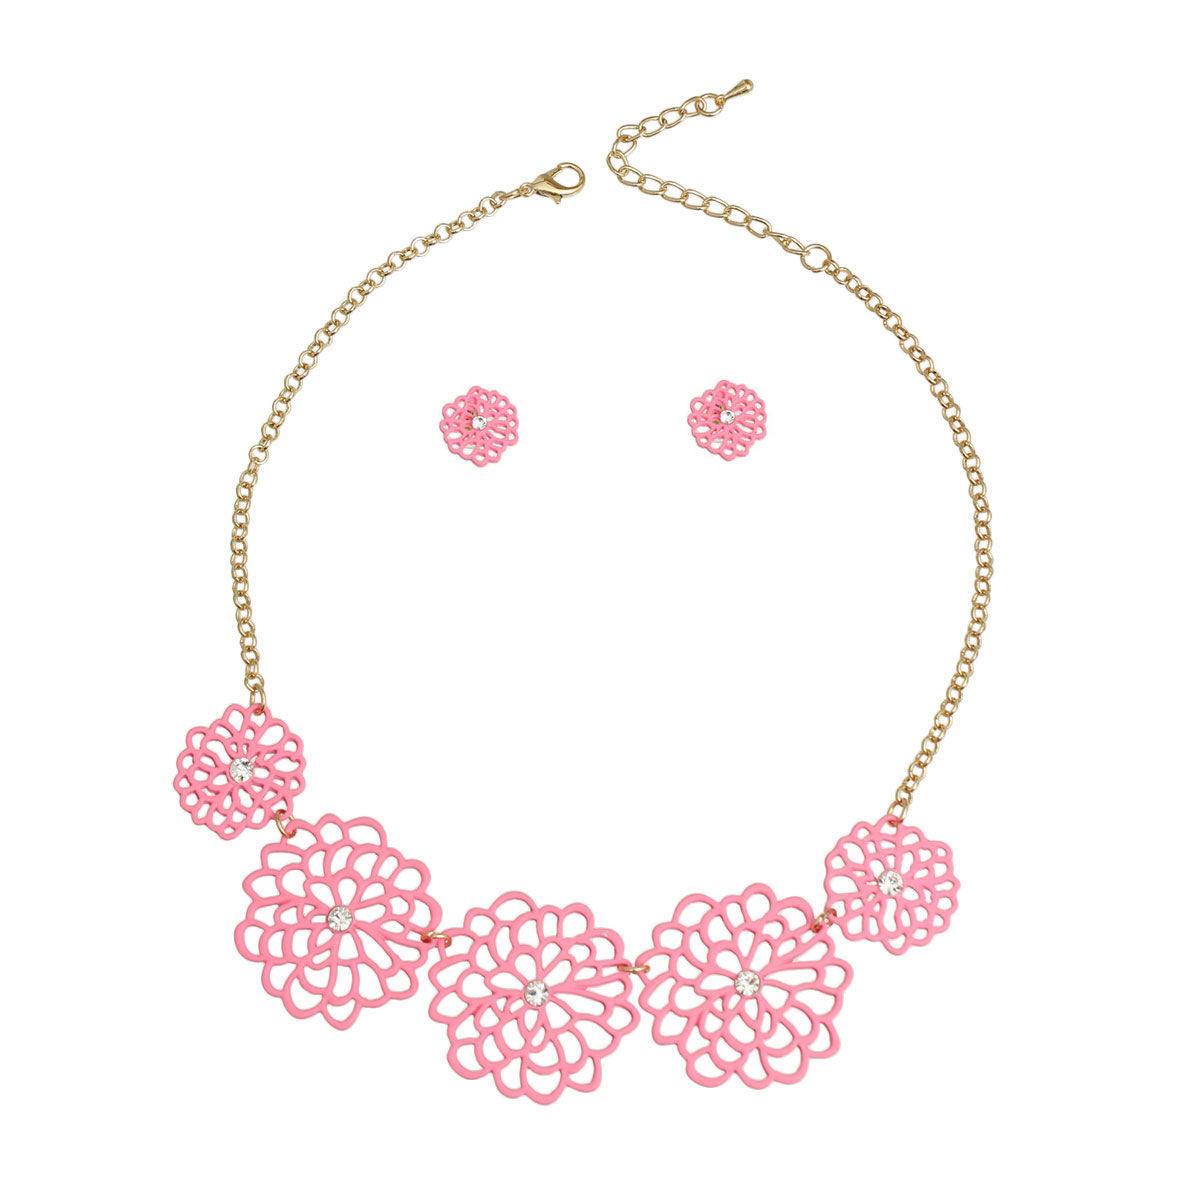 Summer Pink Flower Station Necklace Set - Shop Now!